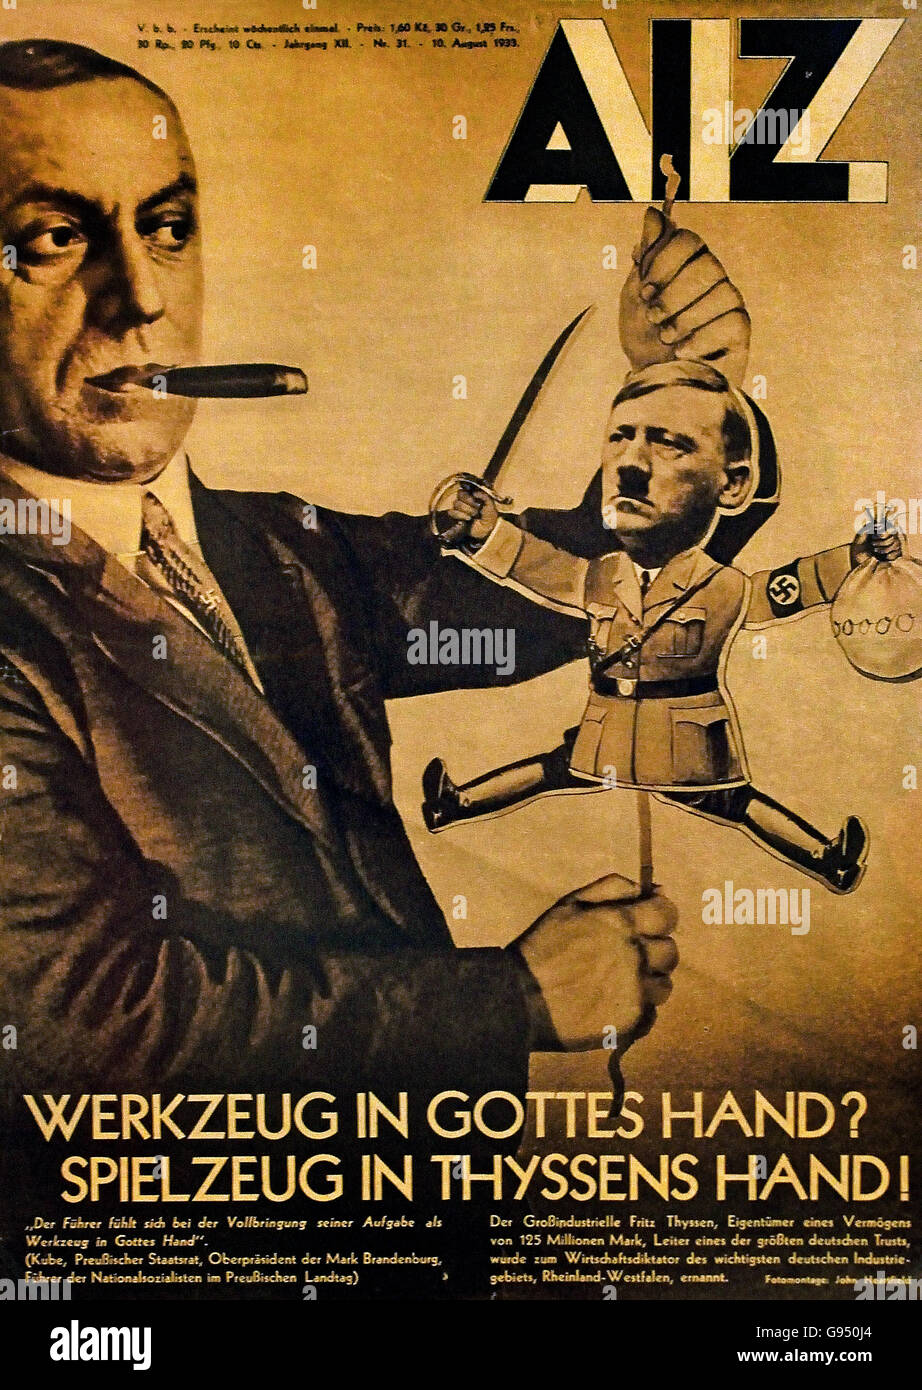 Werkzeug in Gottes spielzeug mano nella mano Thyssens - strumento nelle mani di Dio giocattolo in Thyssen A.I.Z. mano sull'Alleanza delle società Thyssen con NSDAP Berlino Germania nazista Foto Stock